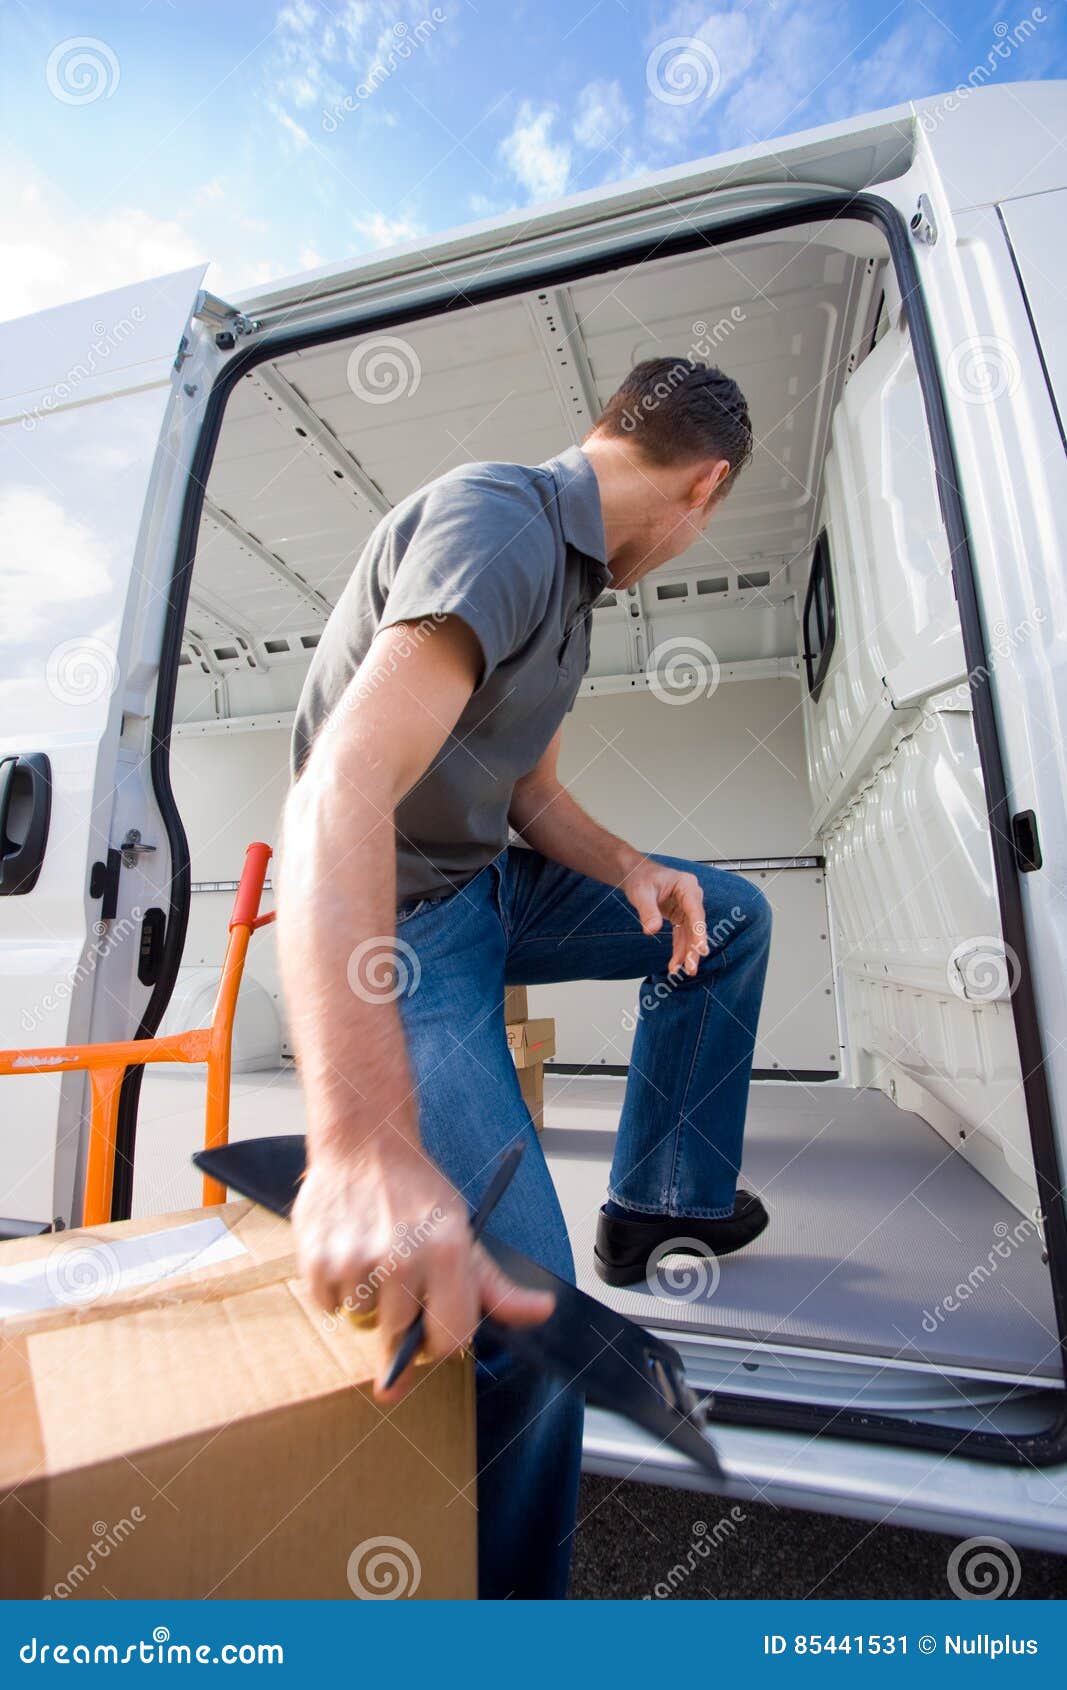 van delivery boy